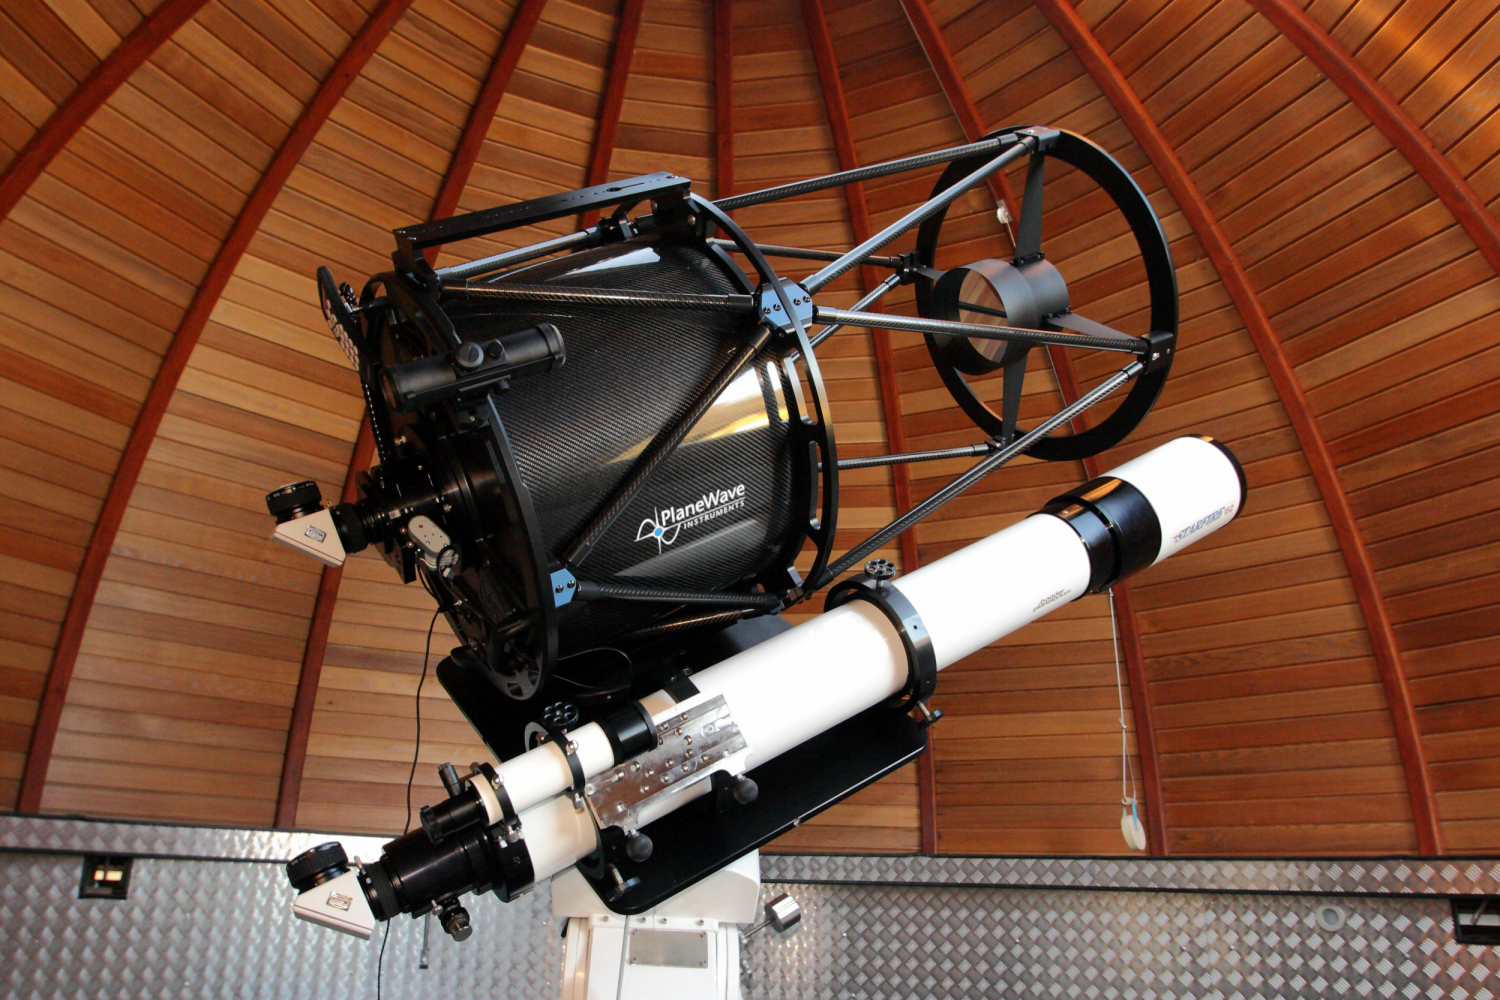 Peterberger Halbmeter-Teleskop (PHT)